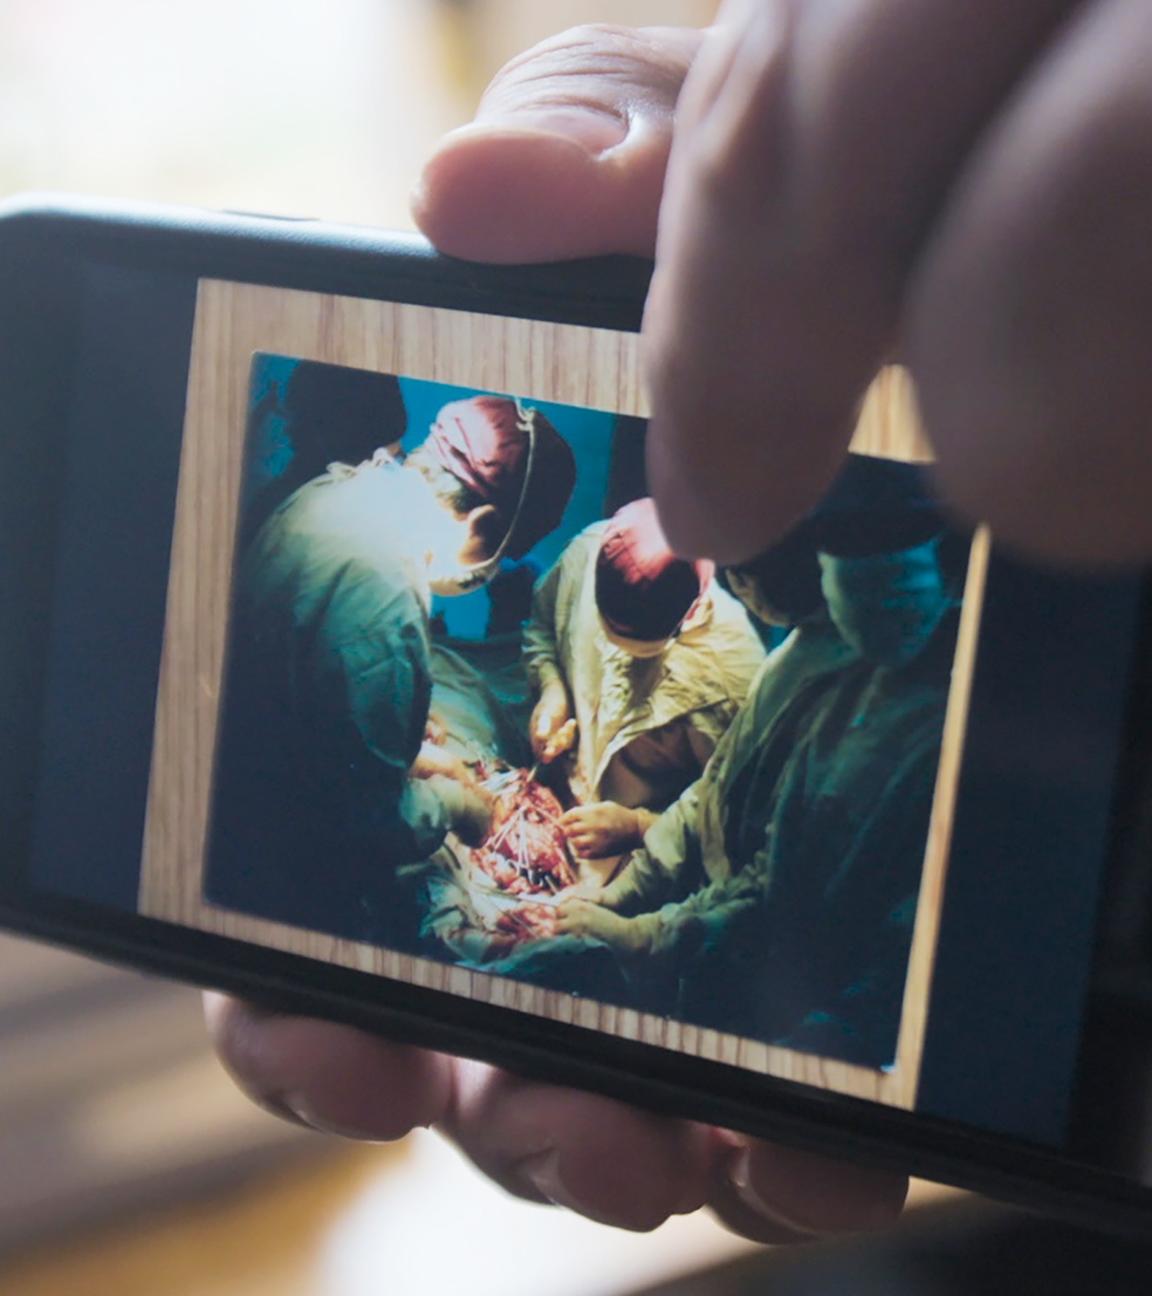 Nahaufnahme eines Smartphones. Auf dem Gerät ist ein Foto zu sehen, das mehrere Ärzte in grünen Kitteln und roten Hauben bei einer Operation zeigt.